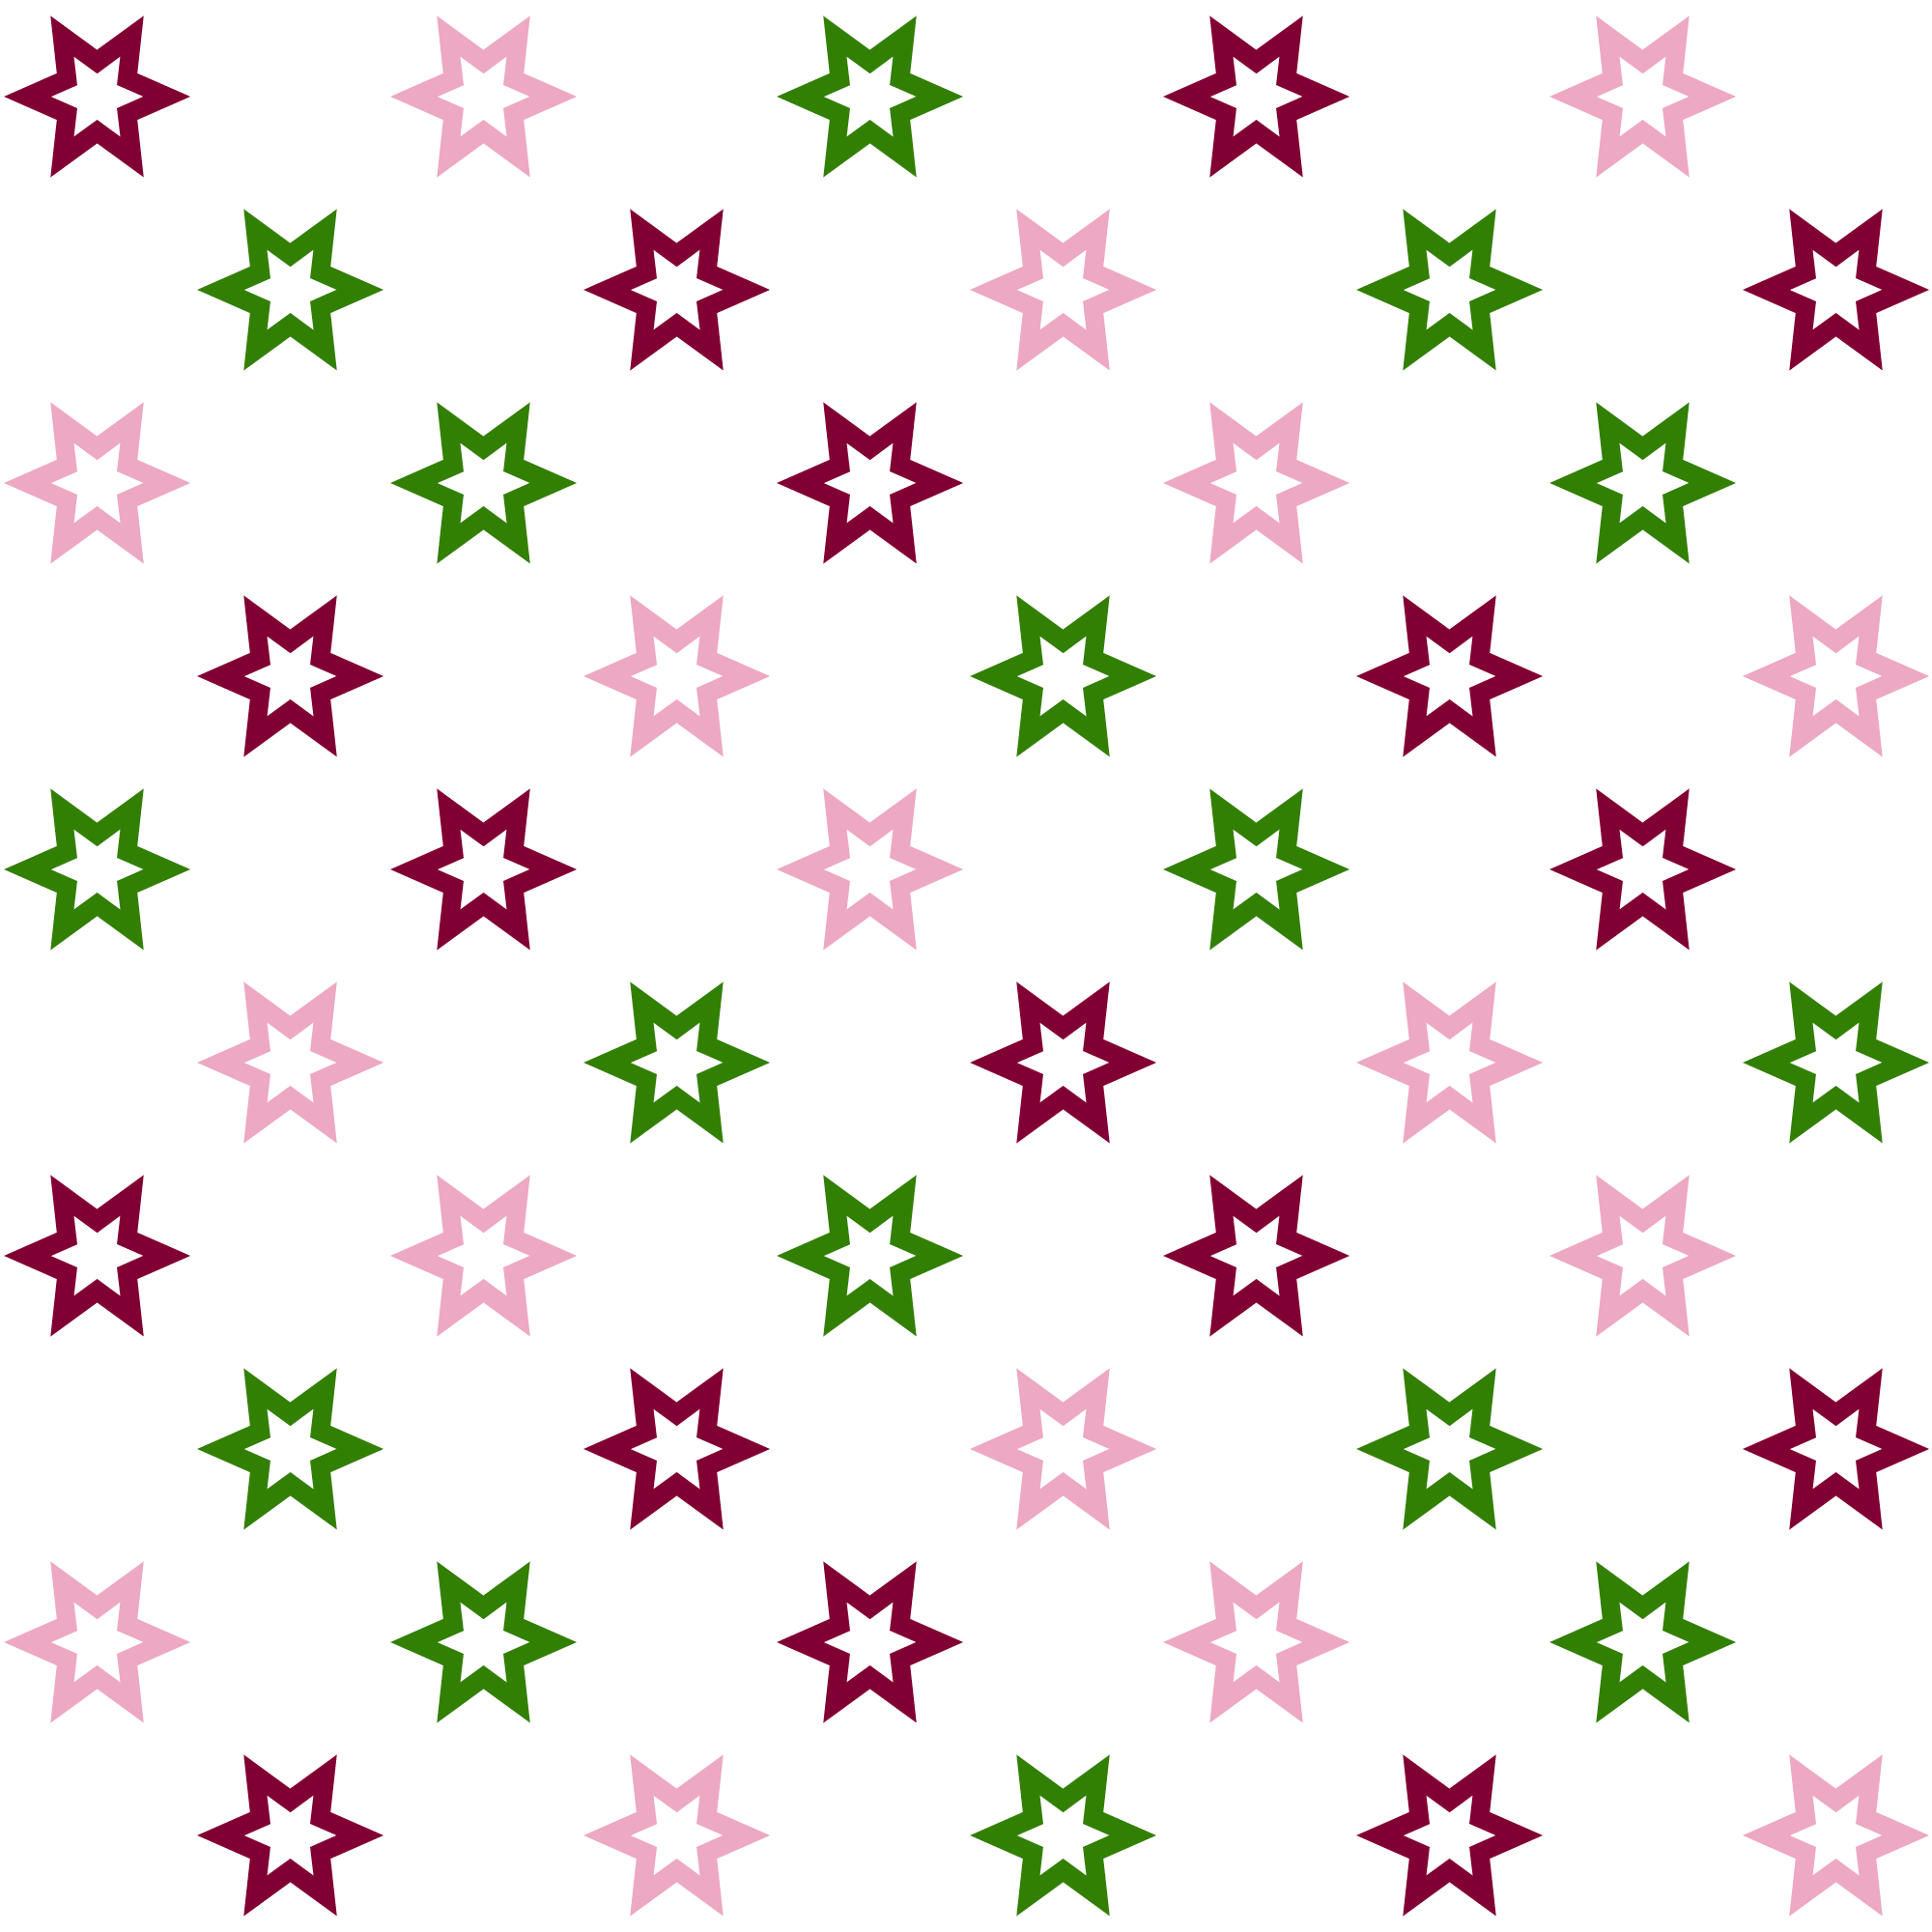 Fundo branco com padrão de contornos de estrelas de seis pontas, os quais estão nas cores vinho, rosa clara e verde.